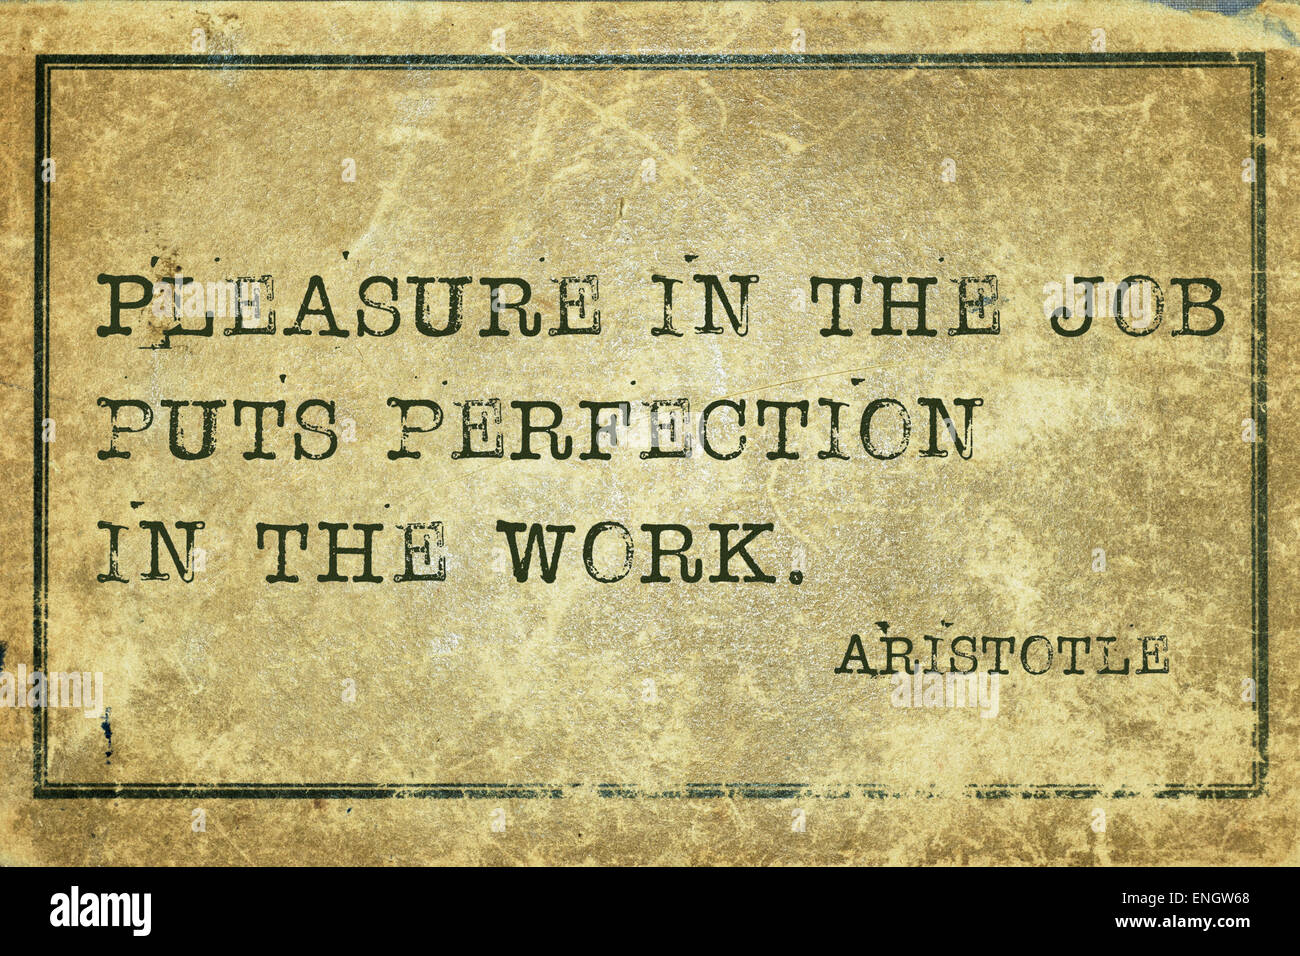 Piacere nel lavoro mette la perfezione - antico filosofo greco Aristotele preventivo stampato su grunge cartone vintage Foto Stock